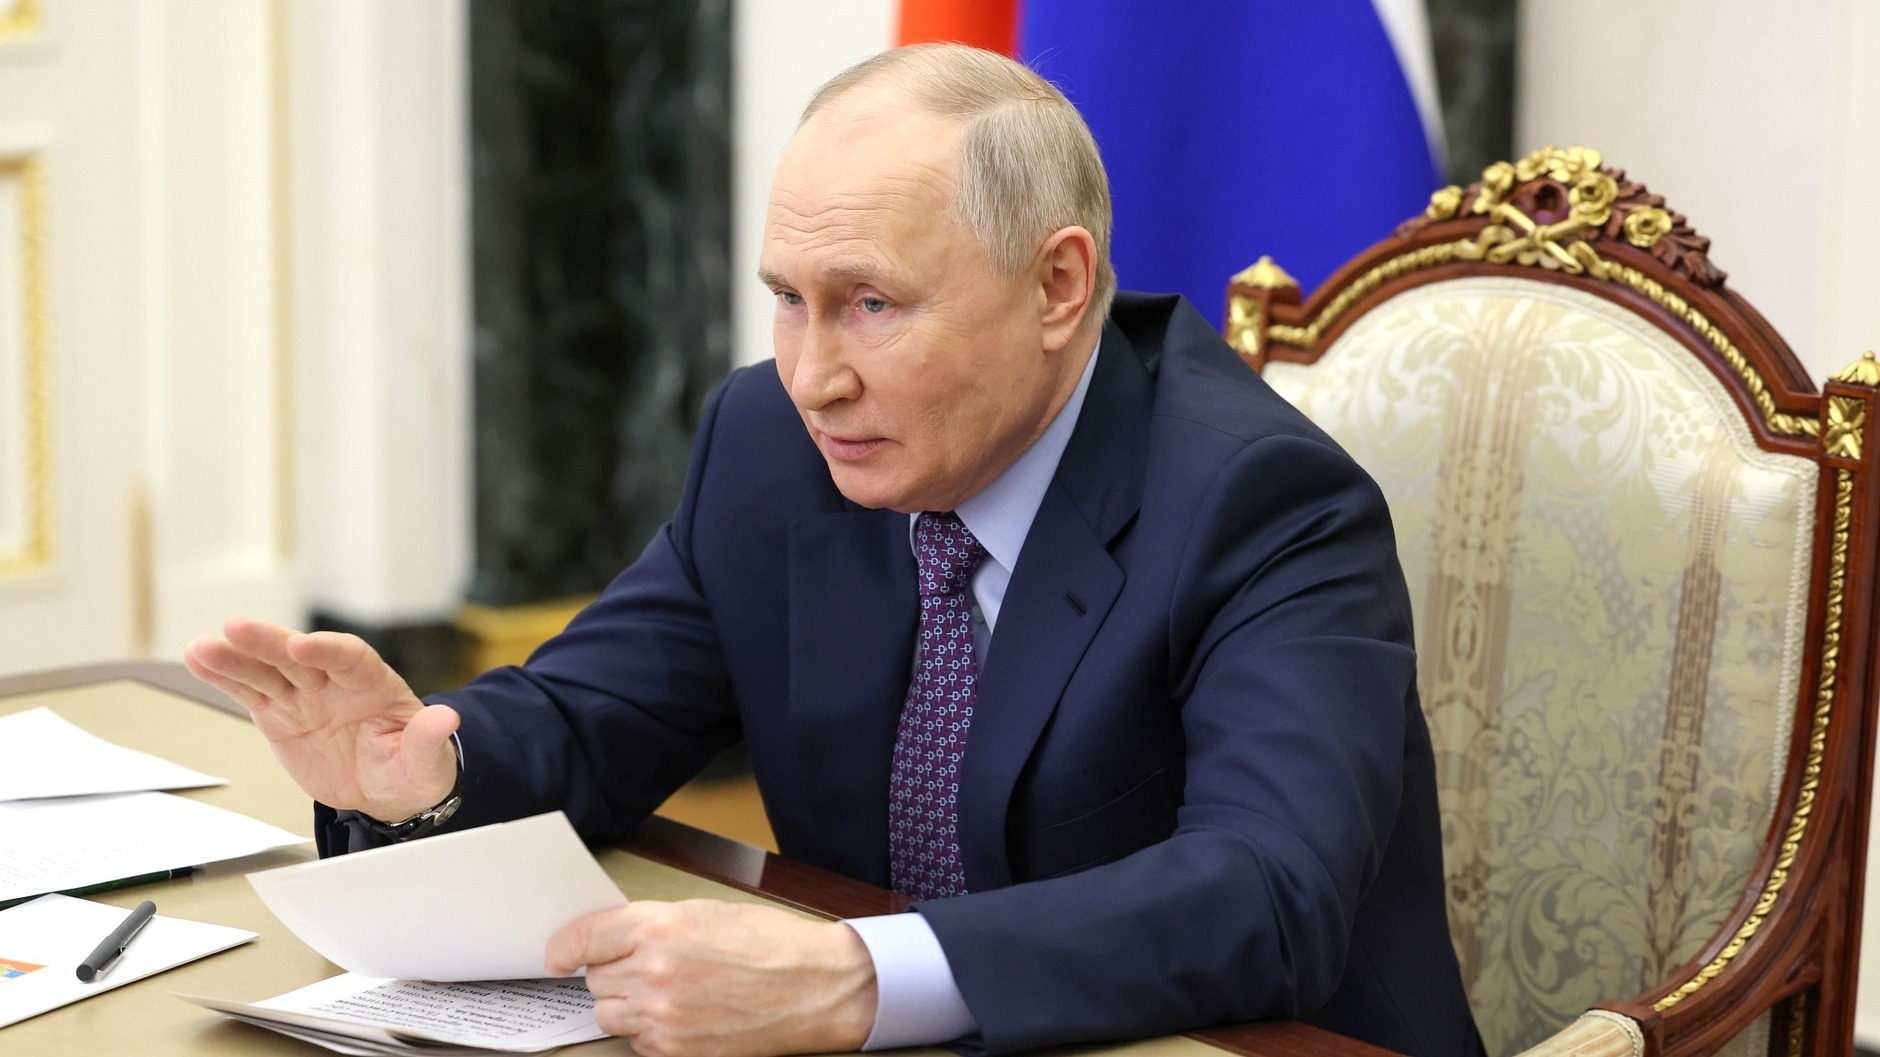 Сегодня Владимир Путин огласит свое послание Федеральному собранию РФ